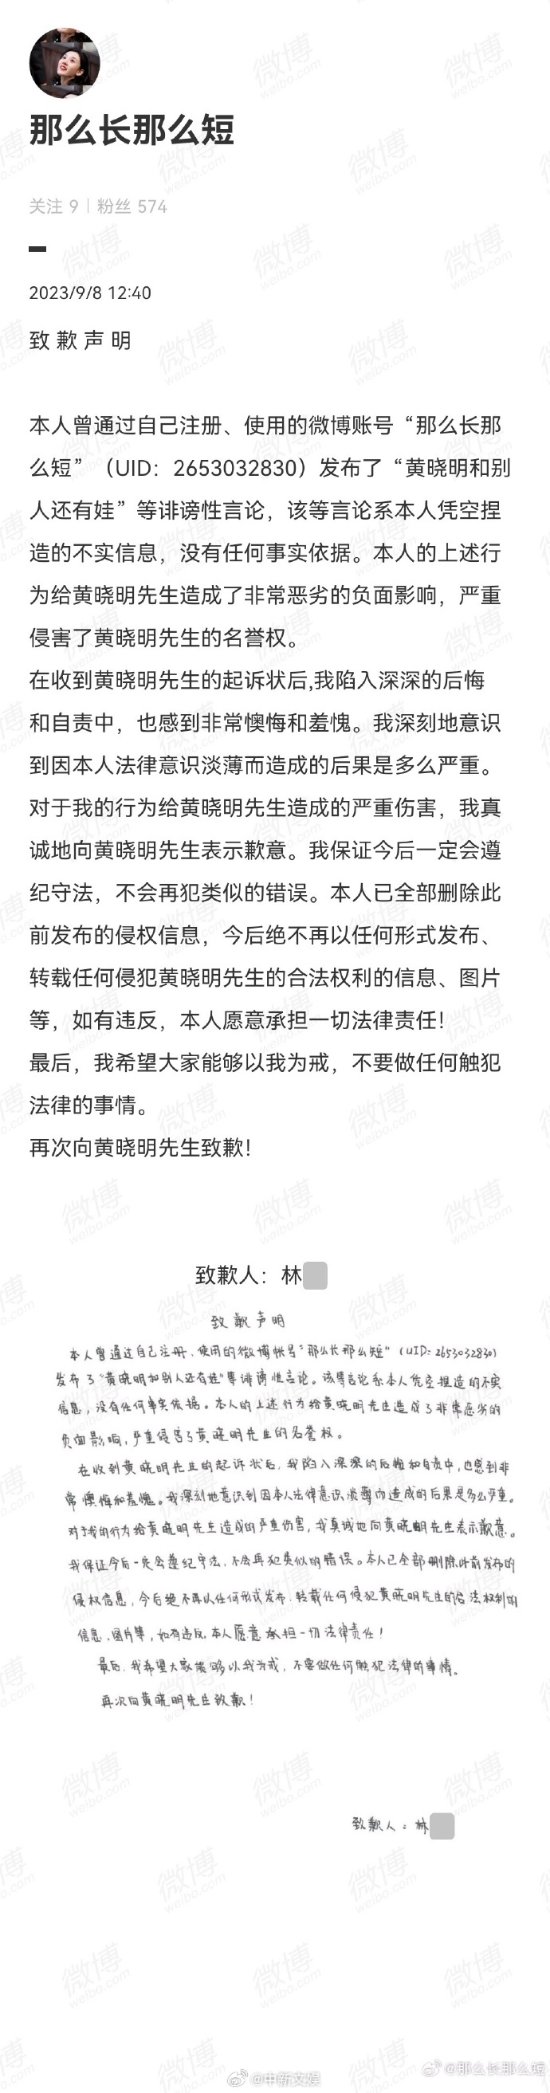 網友向黃曉明公開道歉：